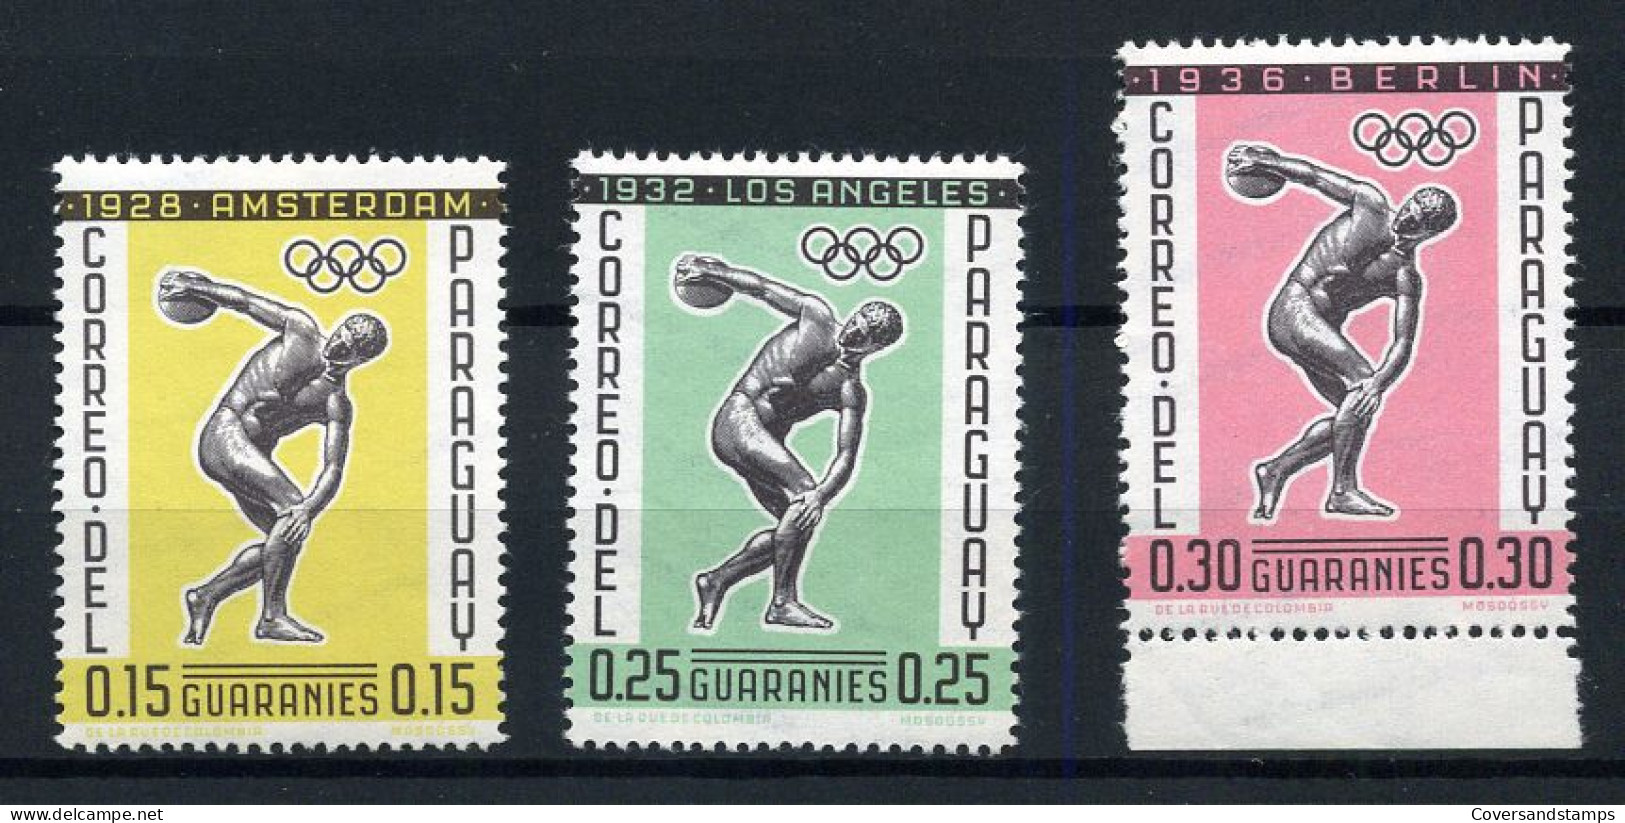 Paraguay - Olympic Games Berlin 1936 - Estate 1936: Berlino